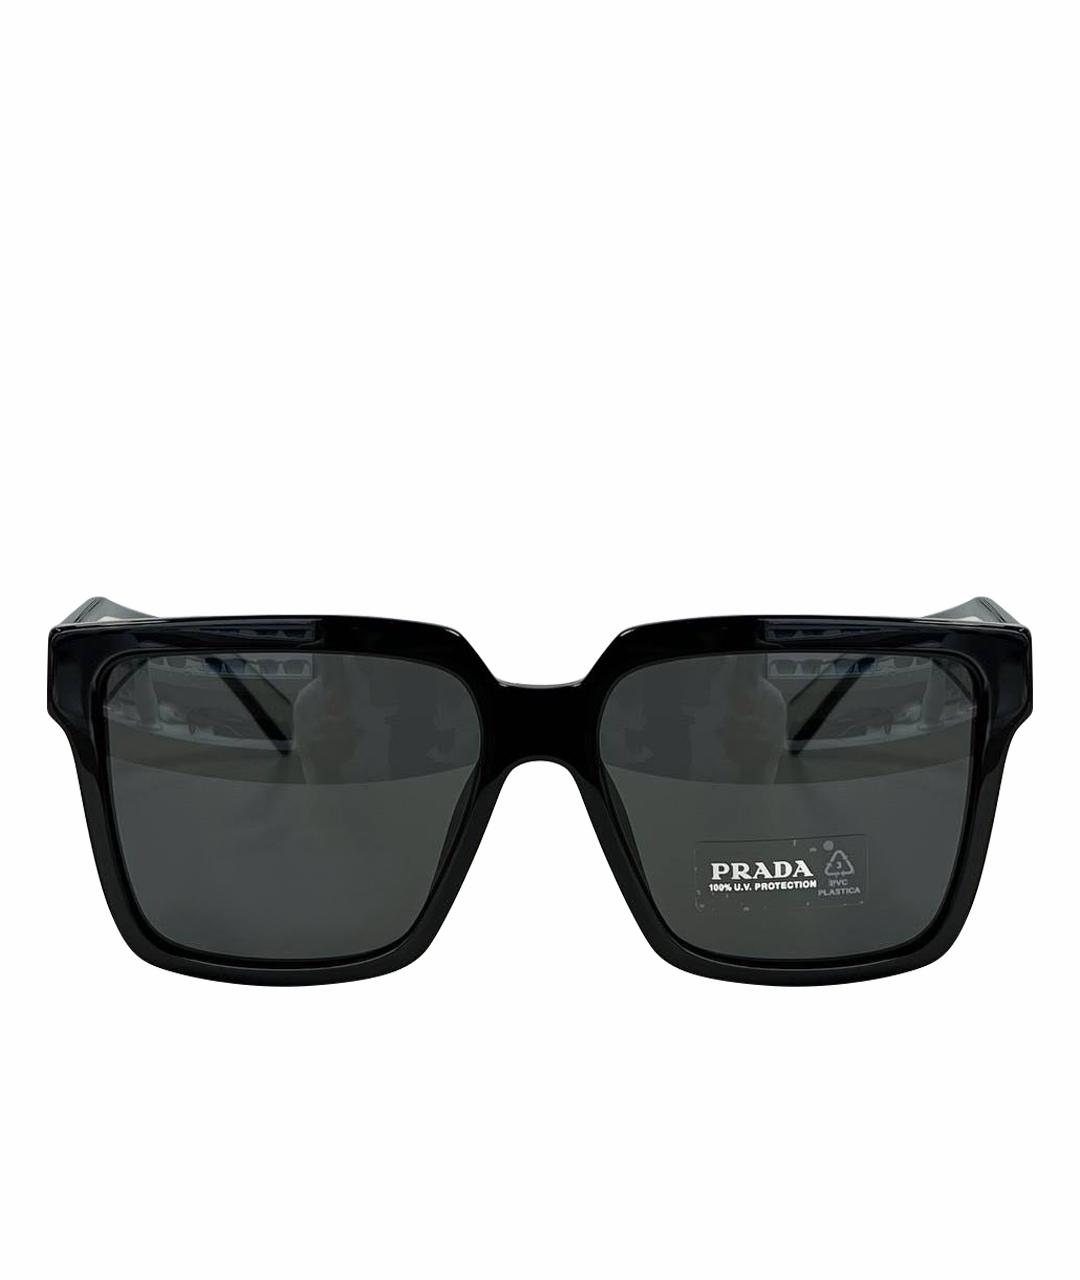 PRADA Пластиковые солнцезащитные очки, фото 1